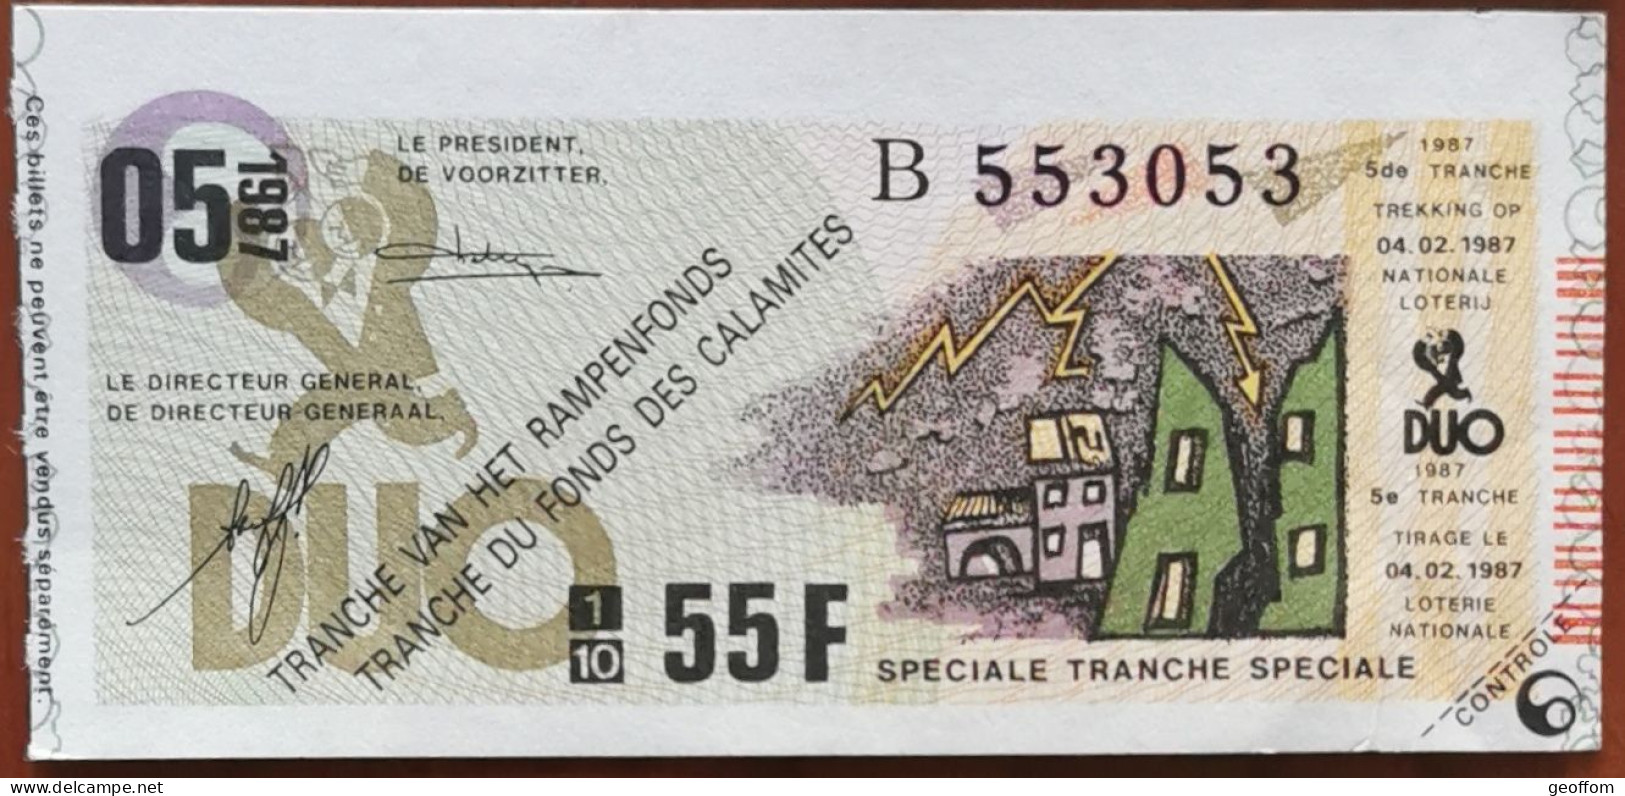 Billet De Loterie Nationale Belgique 1987 5e Tranche Du Fond Des Calamites - 4-2-1987 - Billetes De Lotería